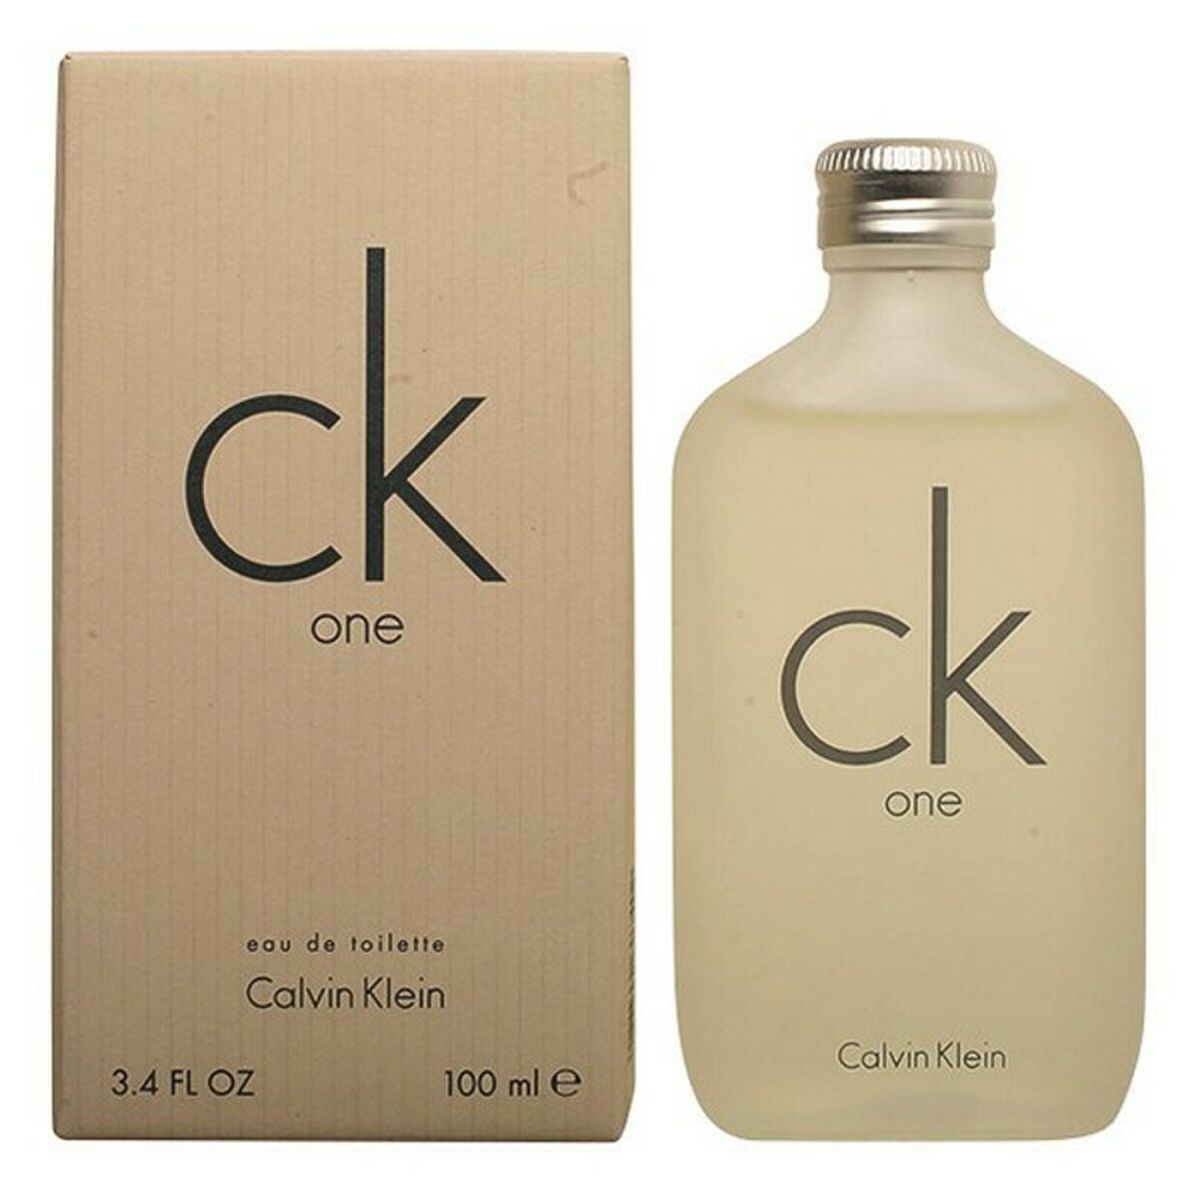 Unisex-Parfüm: Ck One von Calvin Klein - 200 ml